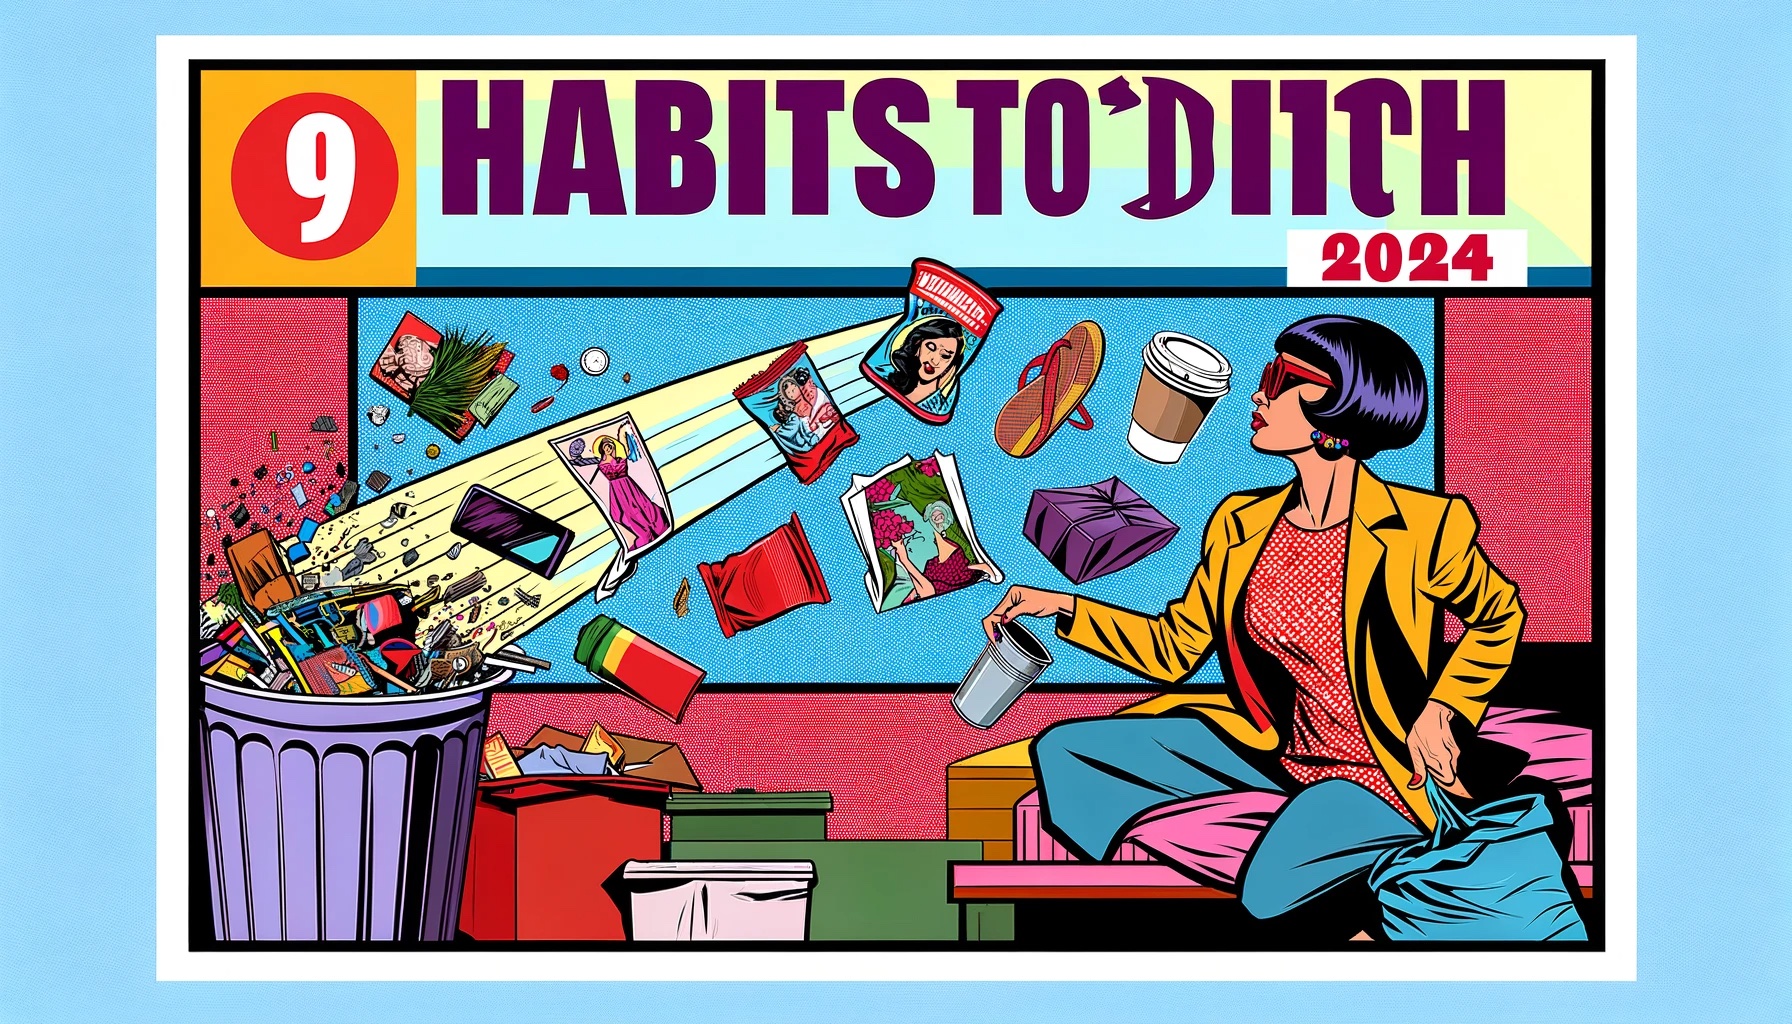 9 Habits to ditch in 2024 by Andreas von der Heydt